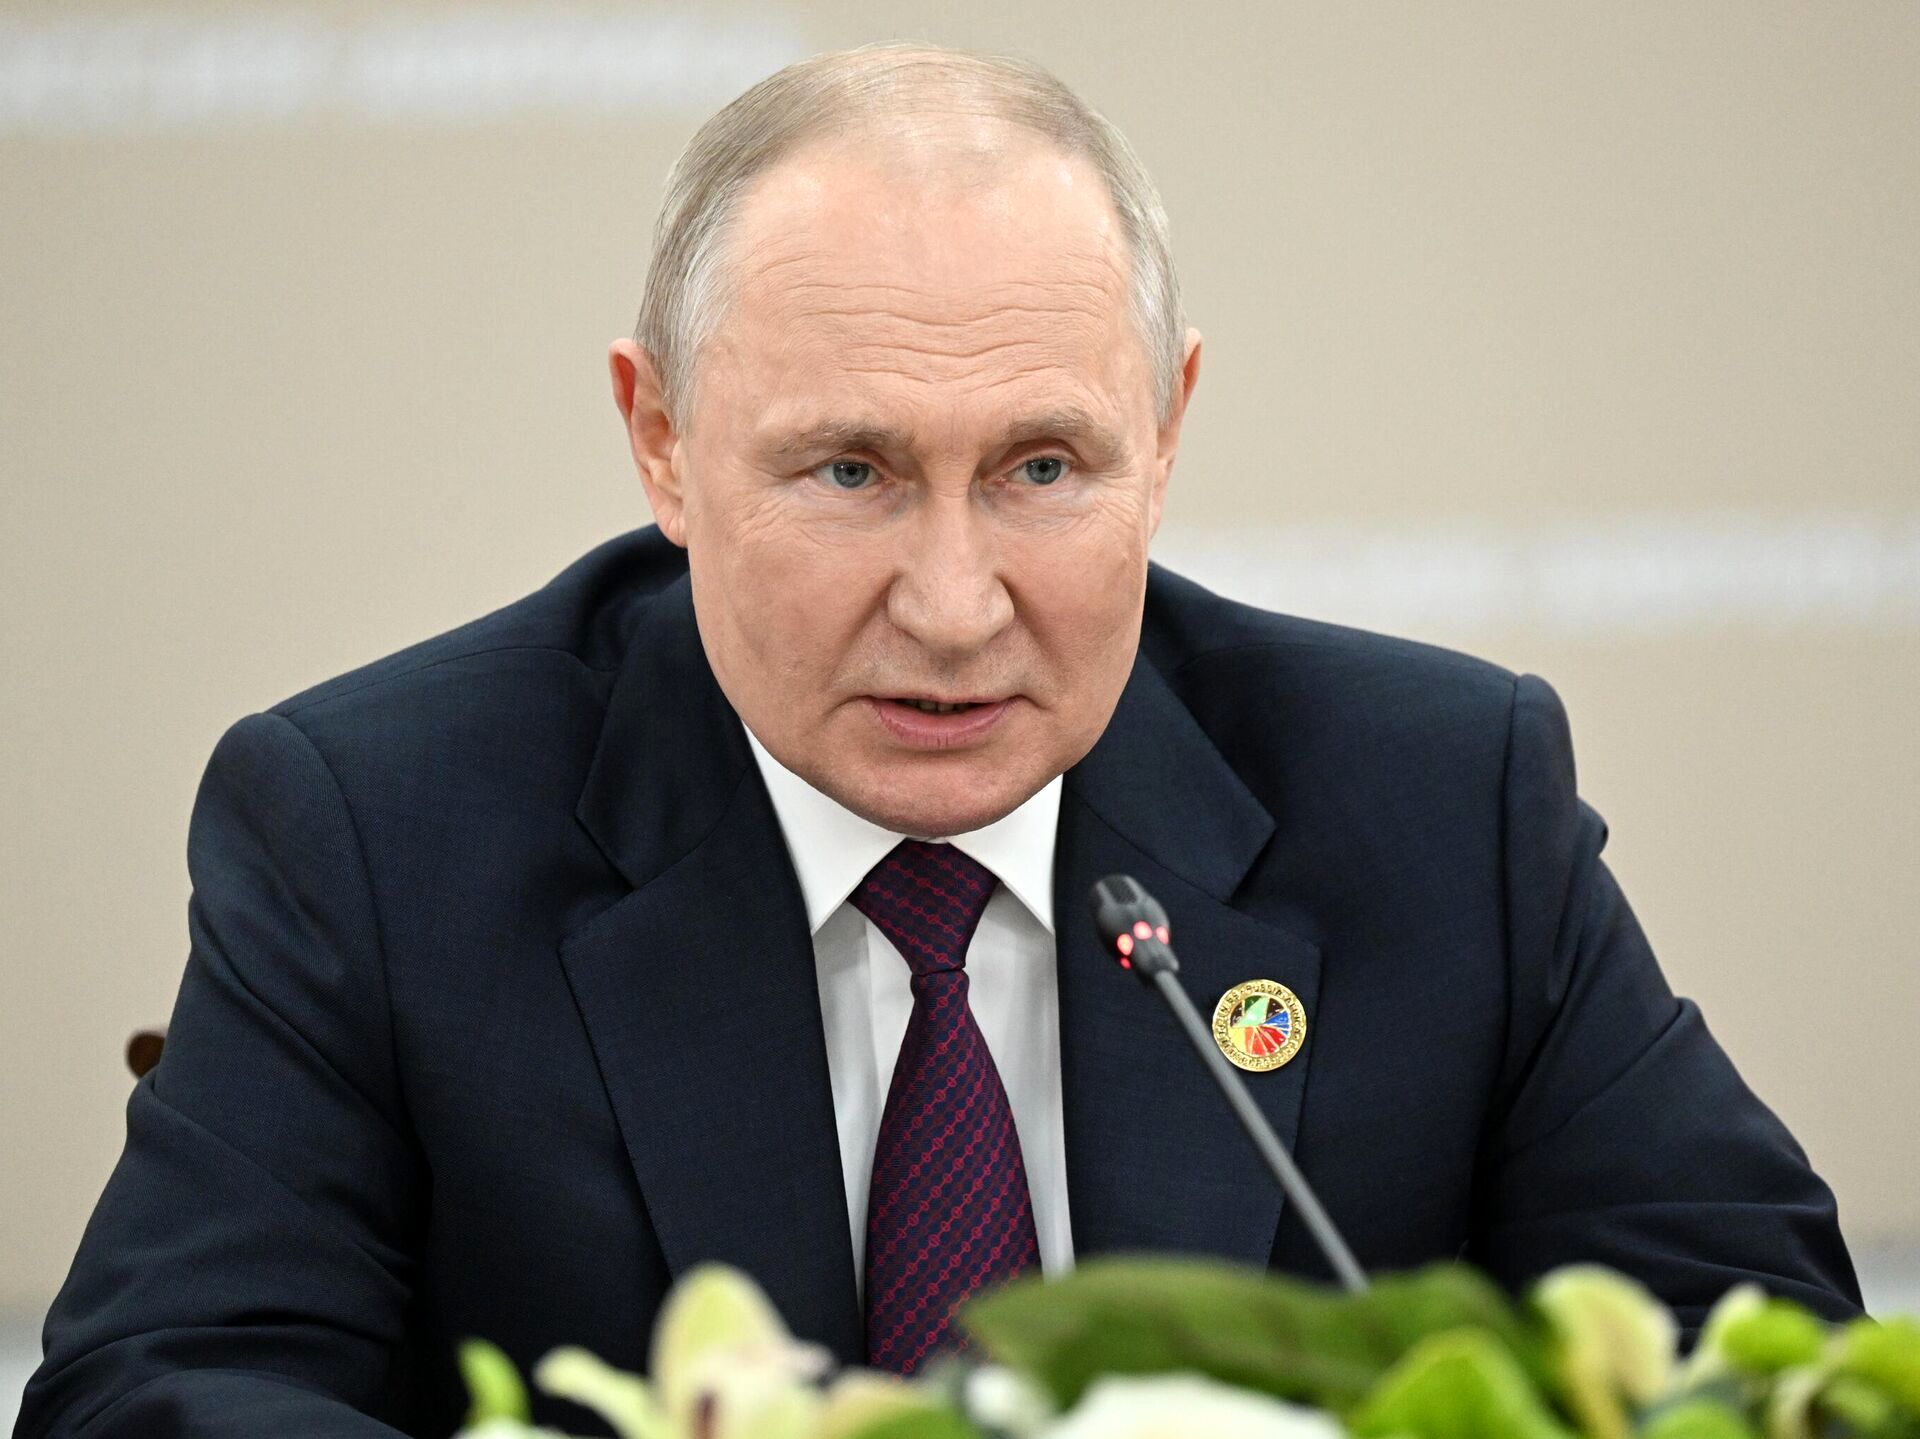  فرمان جدید پوتین به سرویس های اطلاعاتی روسیه